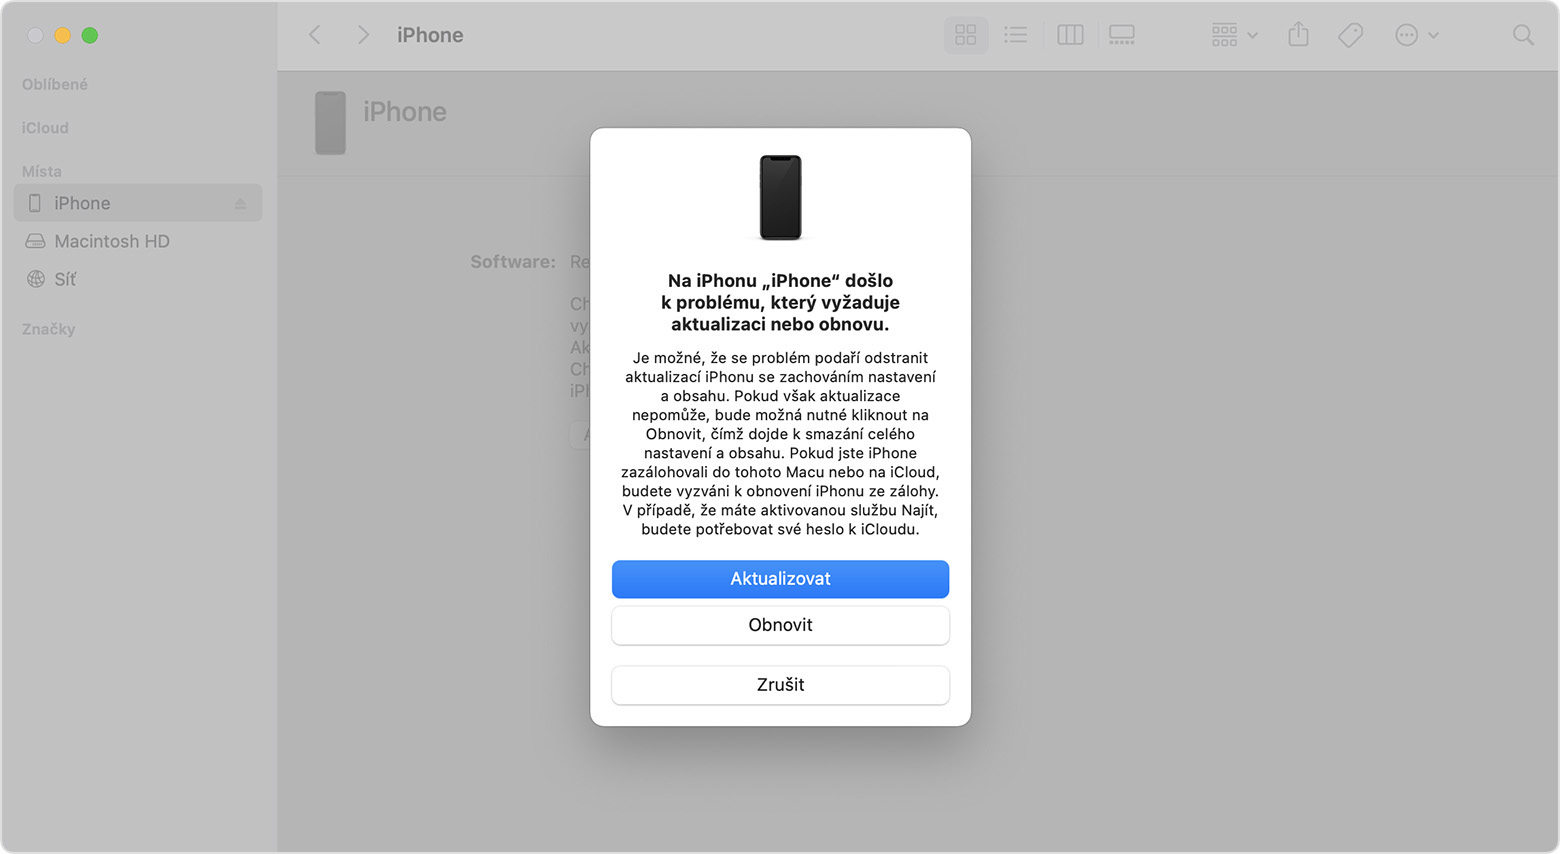 Okno Finderu s výzvou k aktualizaci nebo obnovení iPhonu. Je vybrána aktualizace.